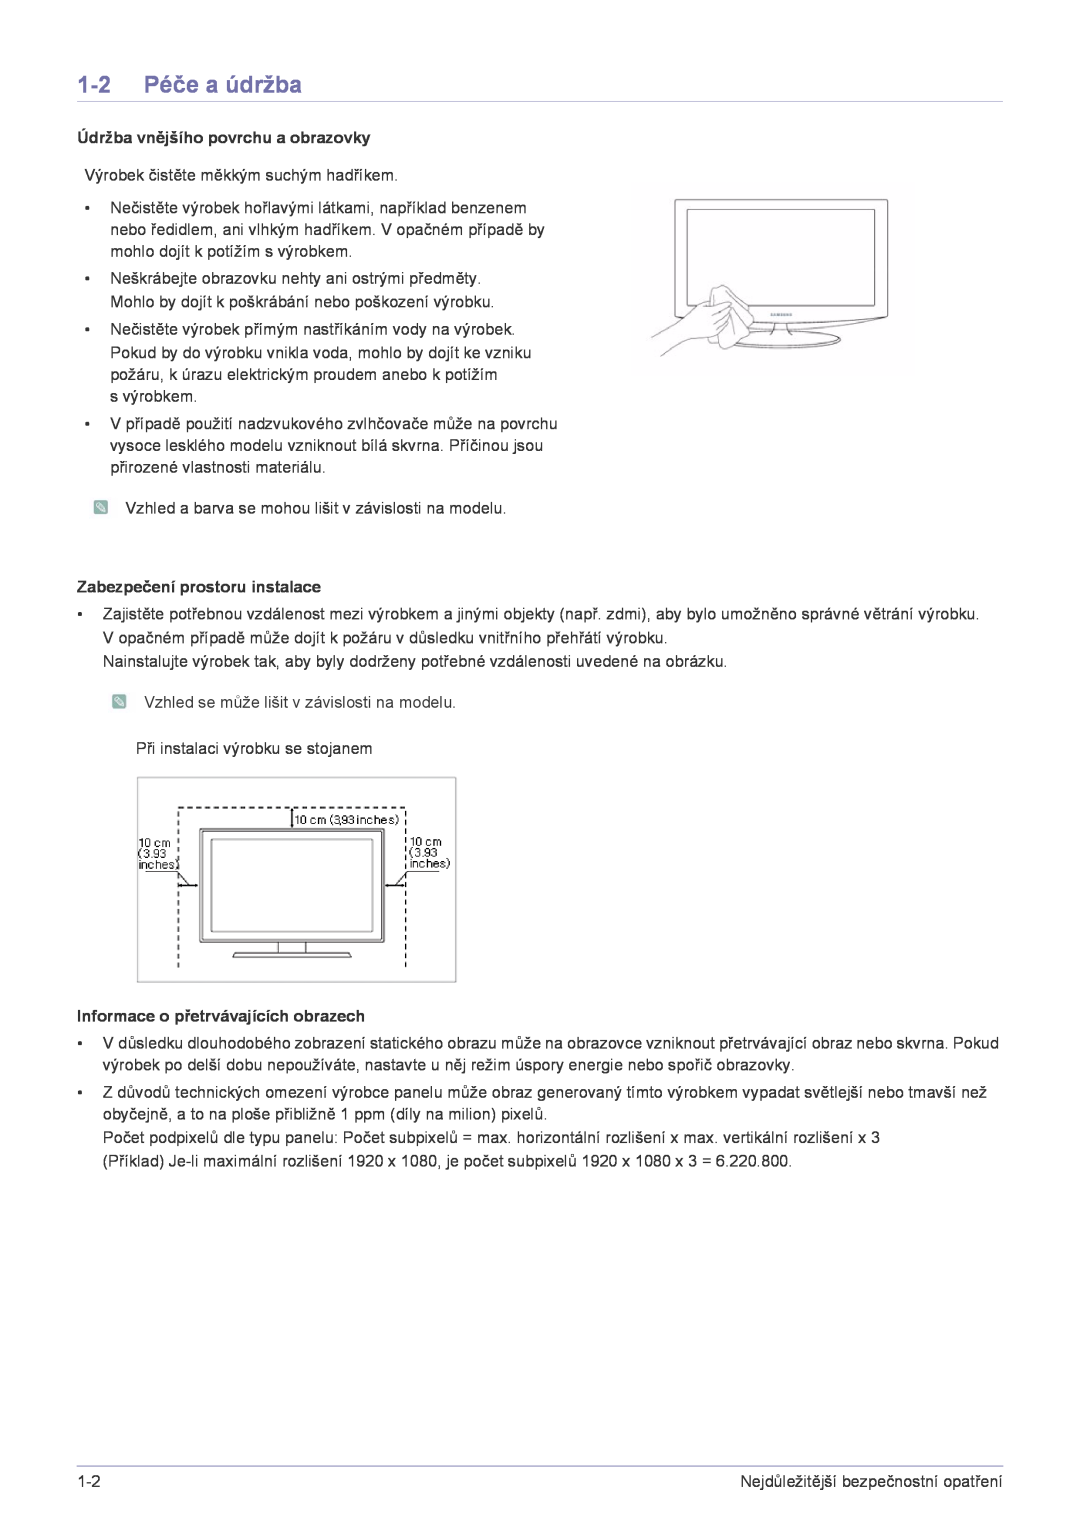 Samsung LS20A300NS/EN manual 1-2 Péče a údržba, Údržba vnějšího povrchu a obrazovky, Zabezpečení prostoru instalace 